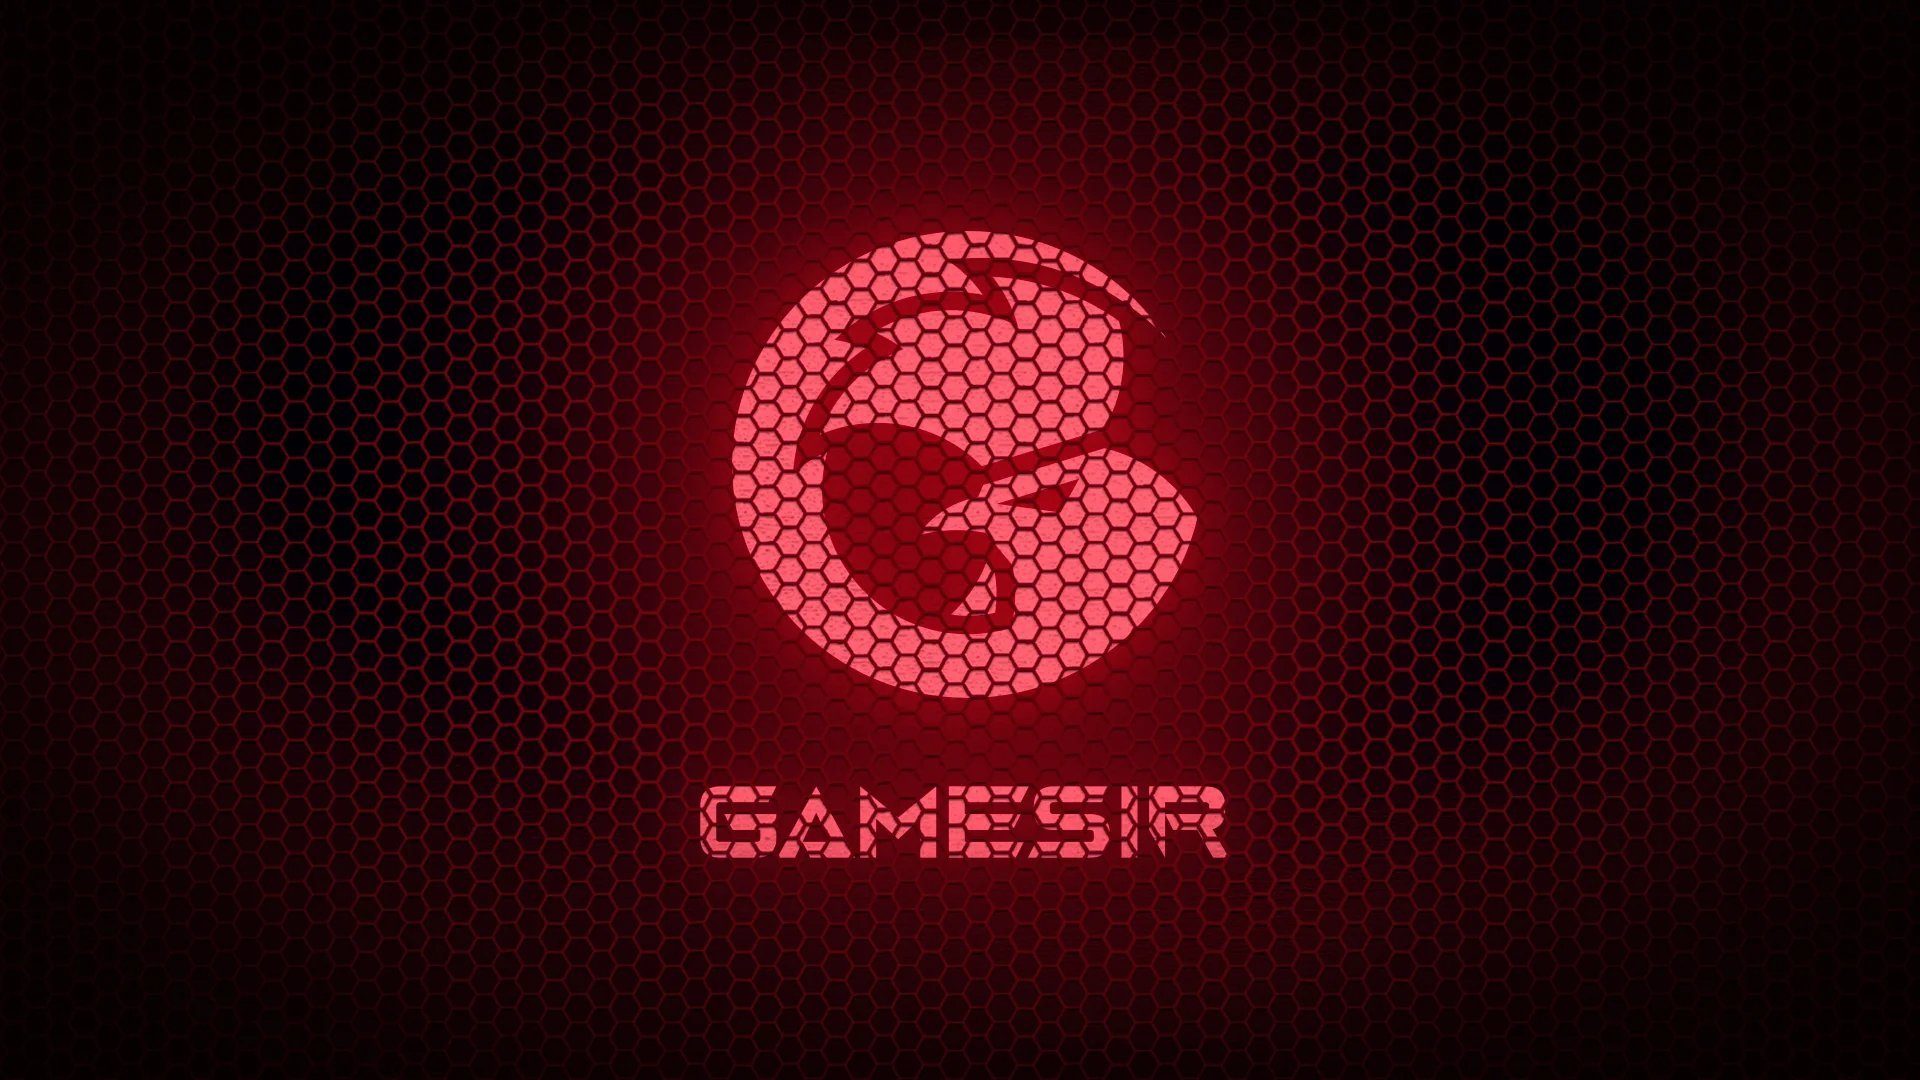 Gamesir